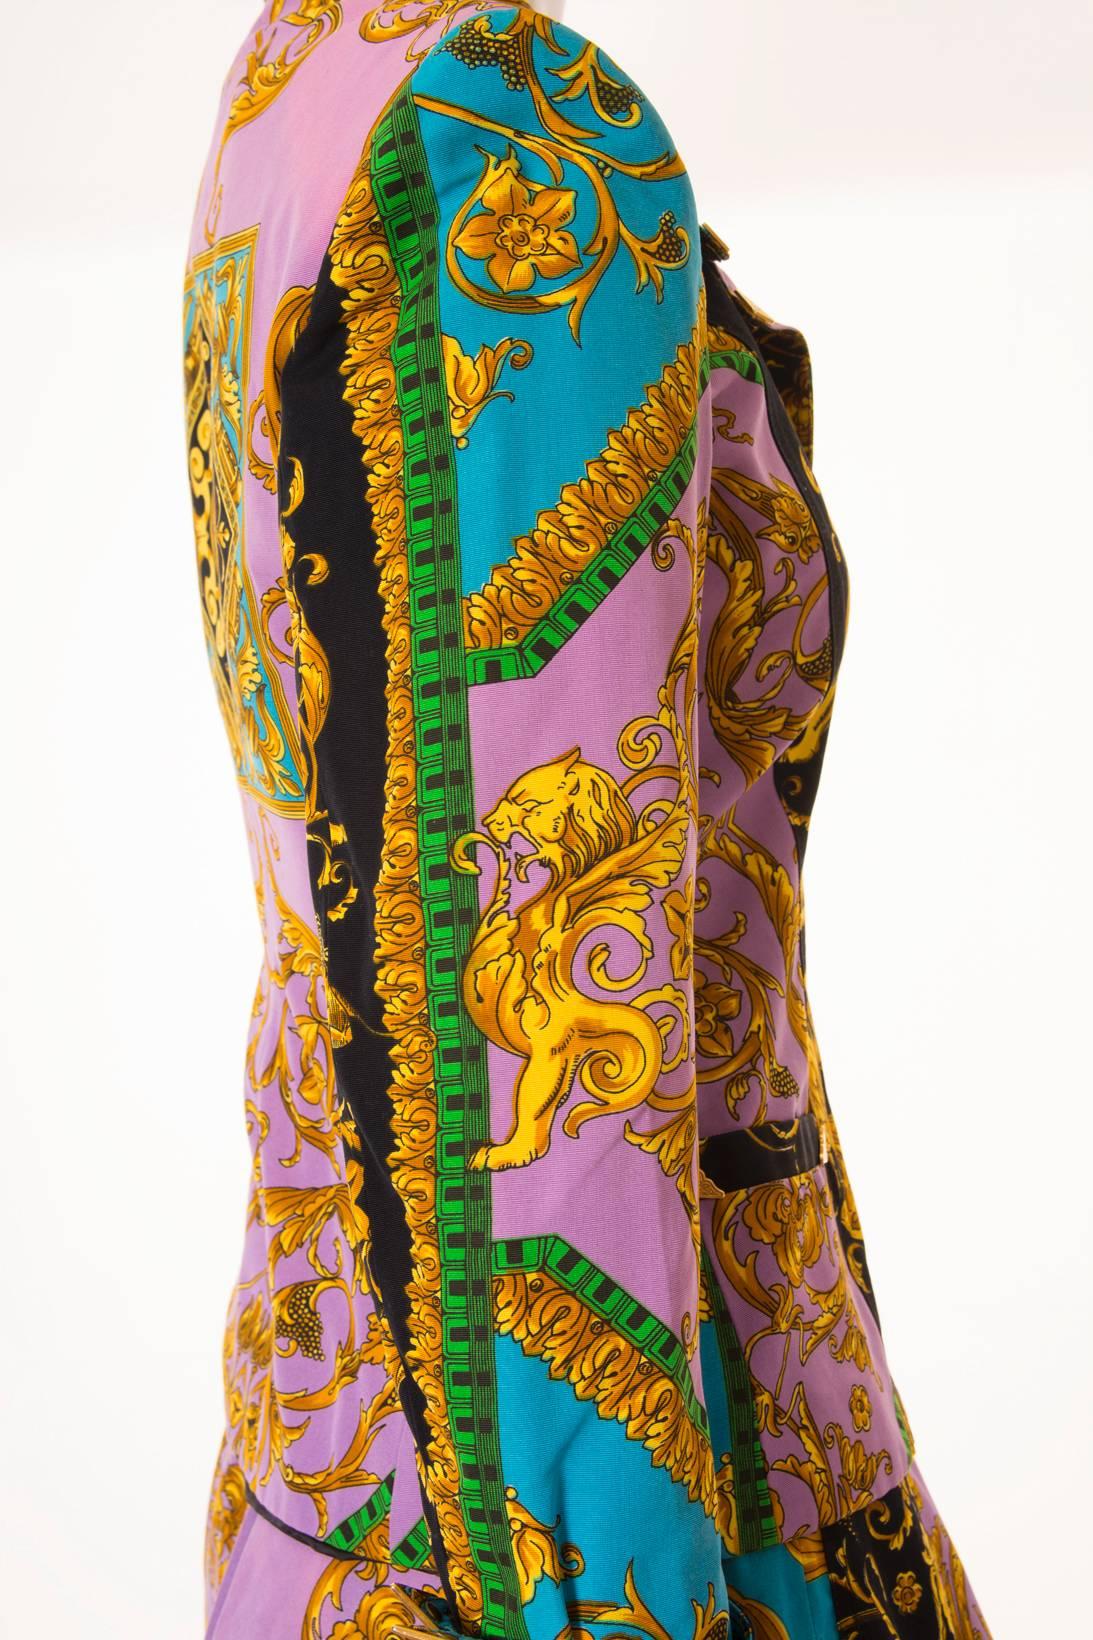 Versus Gianni Versace Baroque Skirt Suit 1